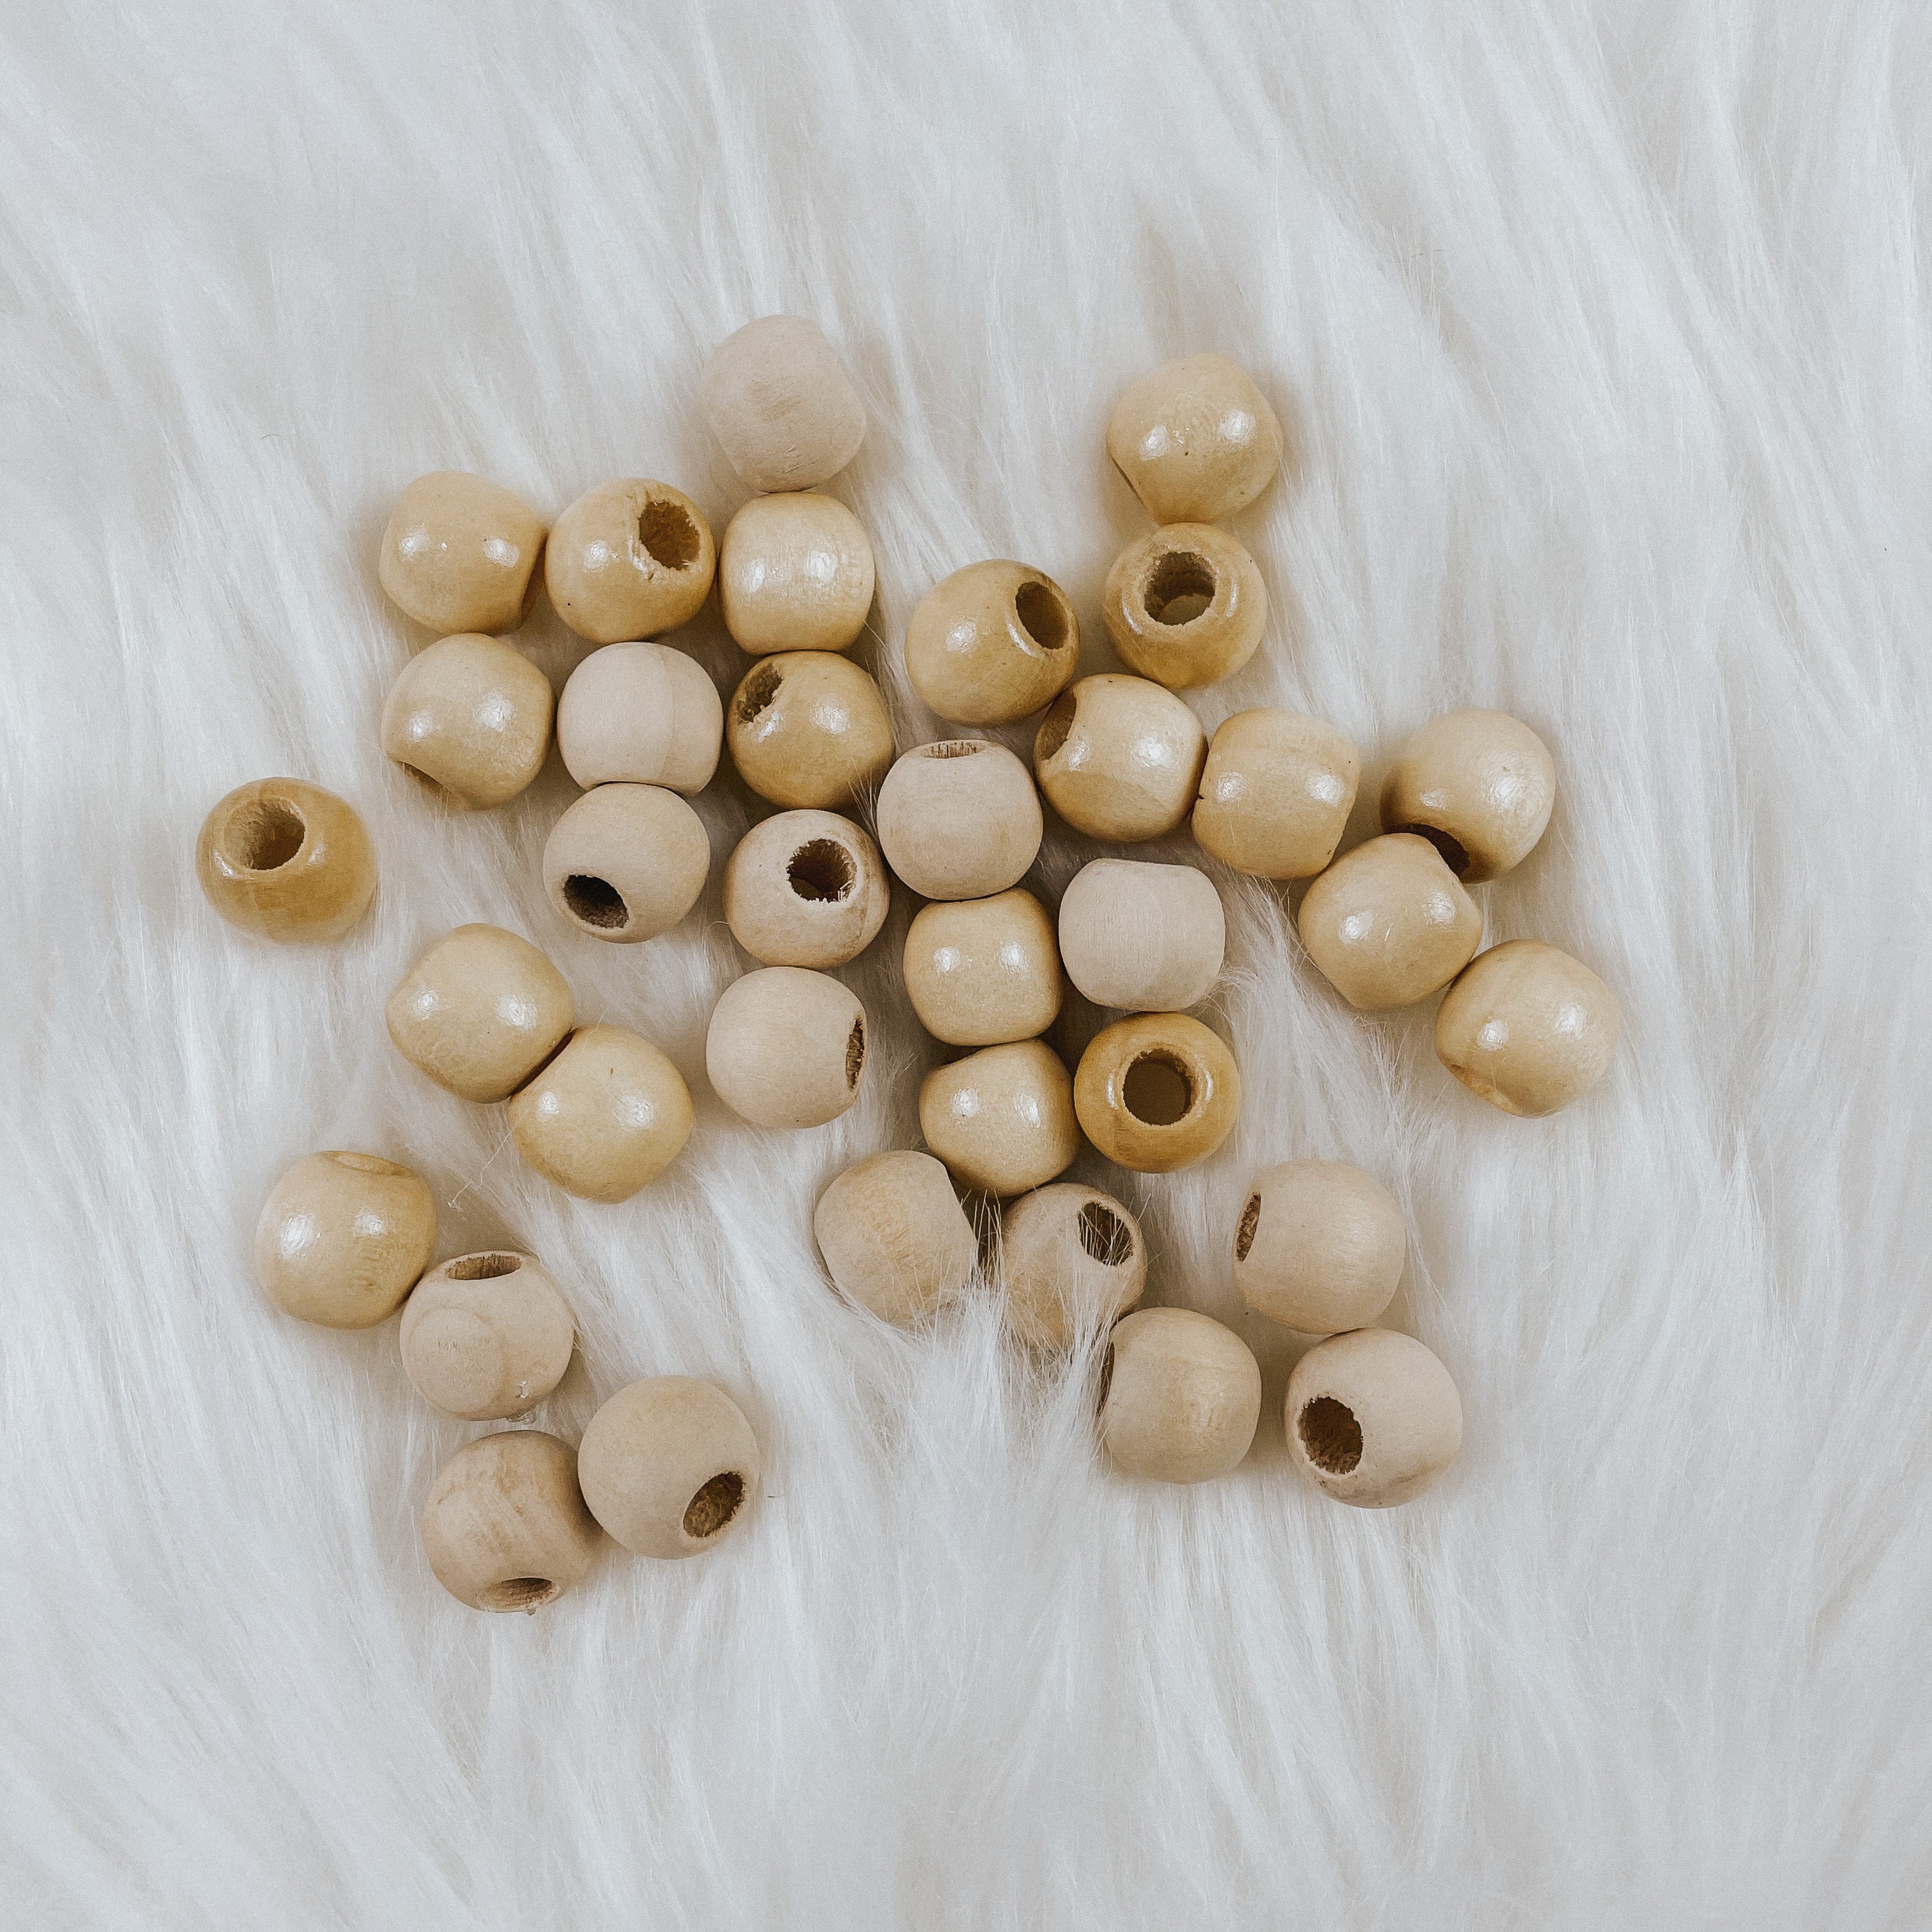 20Pcs-Rund Holz 15mm große Loch Perlen